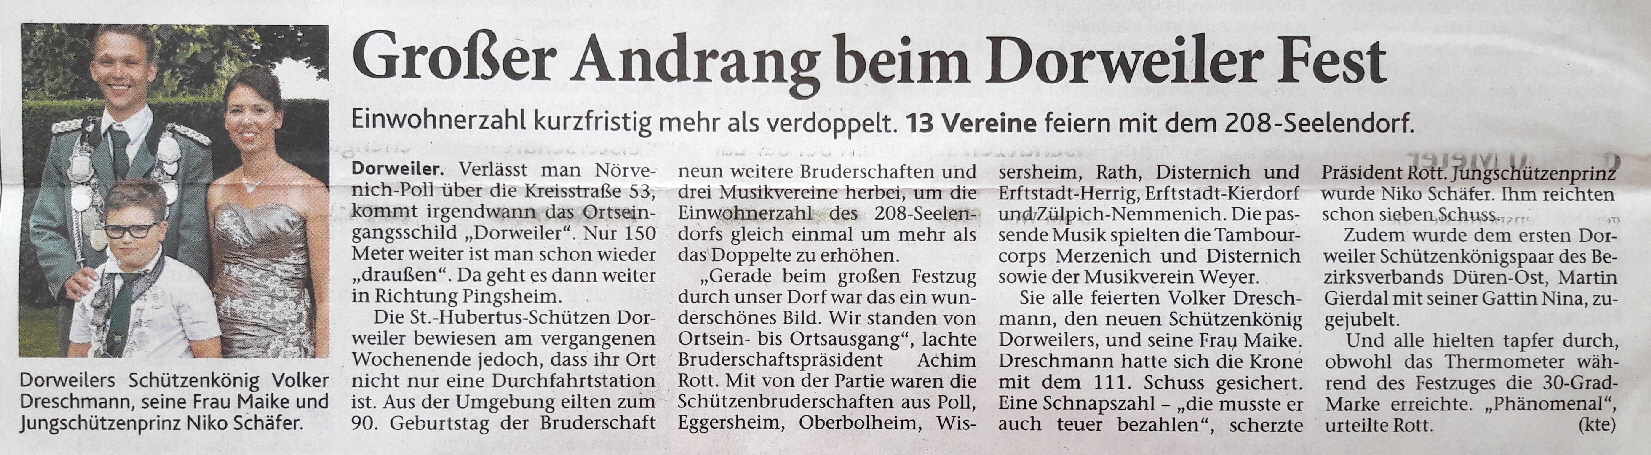 Drener Zeitung 14-07-2017 gross